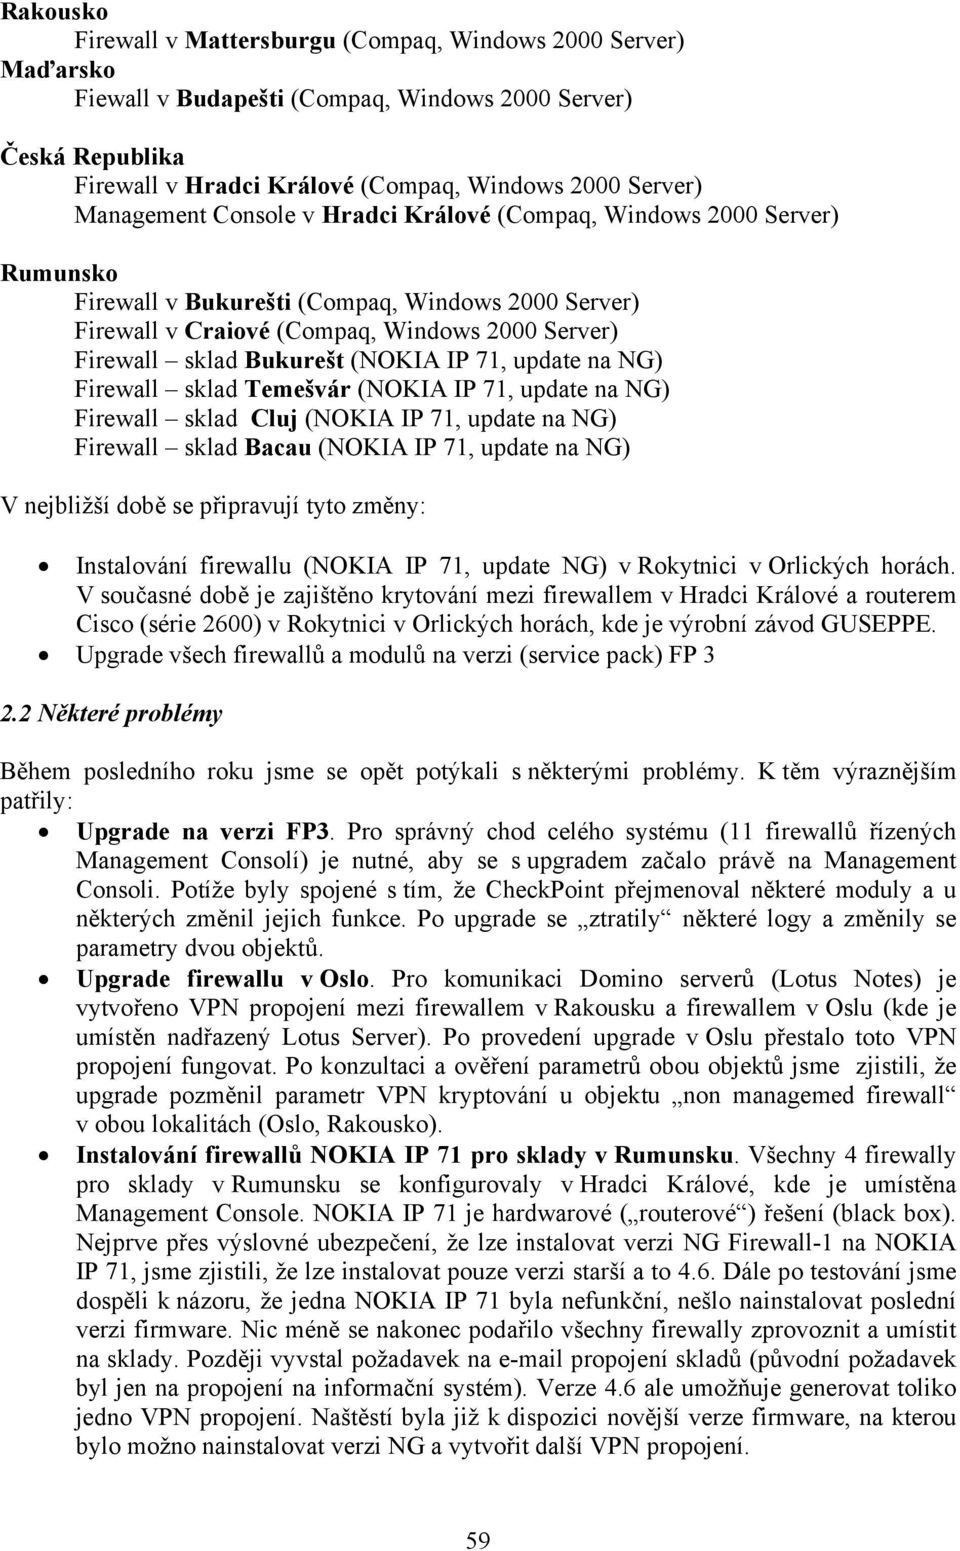 (NOKIA IP 71, update na NG) Firewall sklad Temešvár (NOKIA IP 71, update na NG) Firewall sklad Cluj (NOKIA IP 71, update na NG) Firewall sklad Bacau (NOKIA IP 71, update na NG) V nejbližší době se